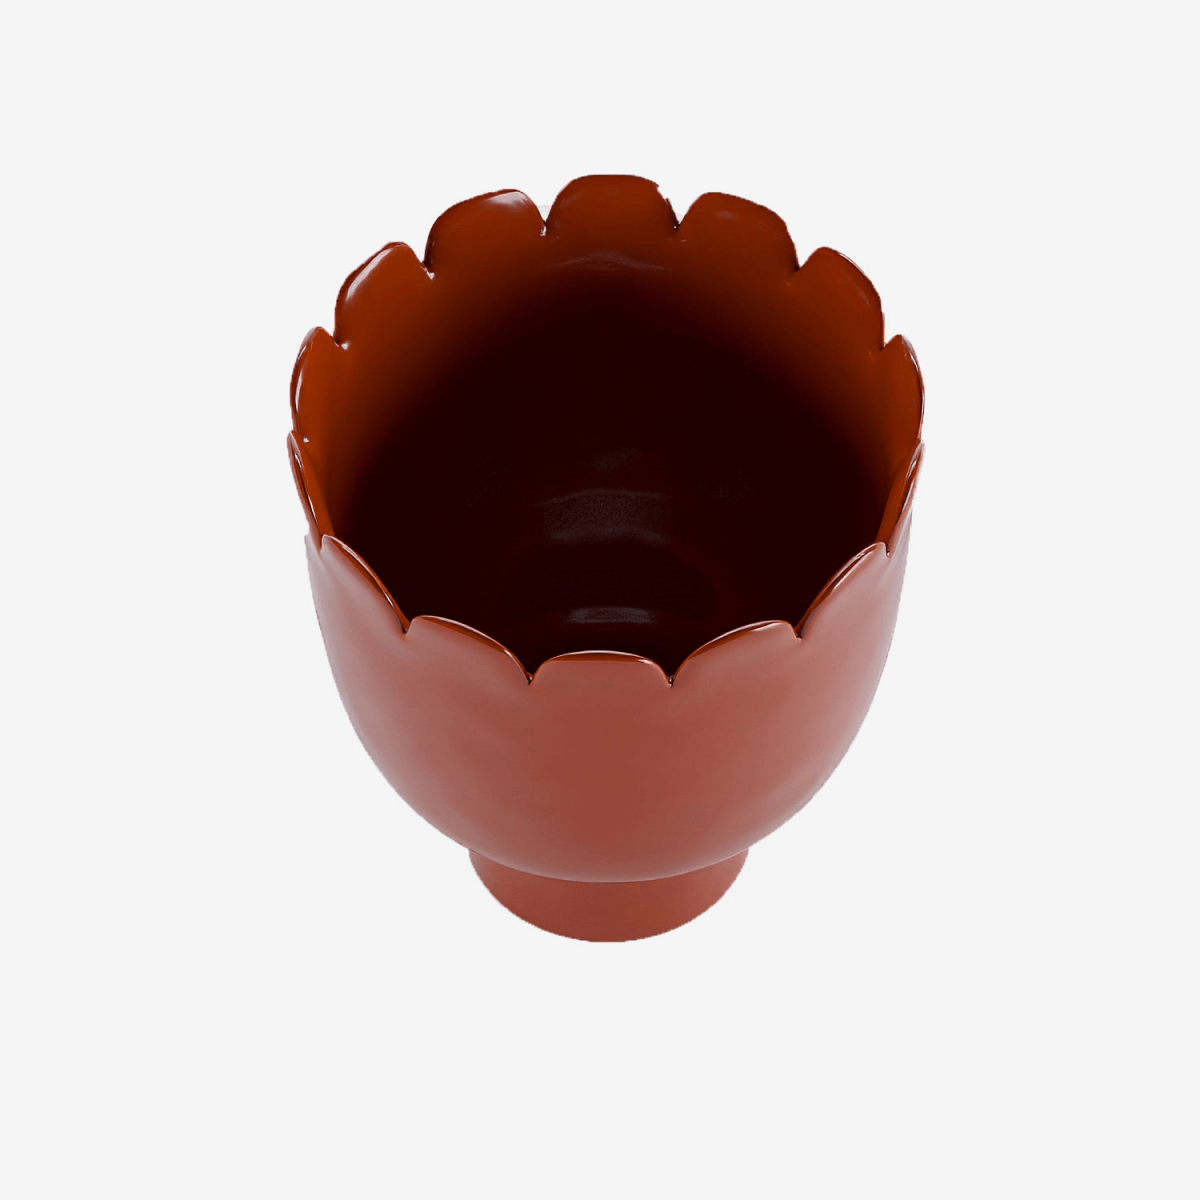 Les accessoires déco Potiron Paris embellissent votre intérieur : Vase forme tulipe en céramique rouge Marceau Potiron Paris